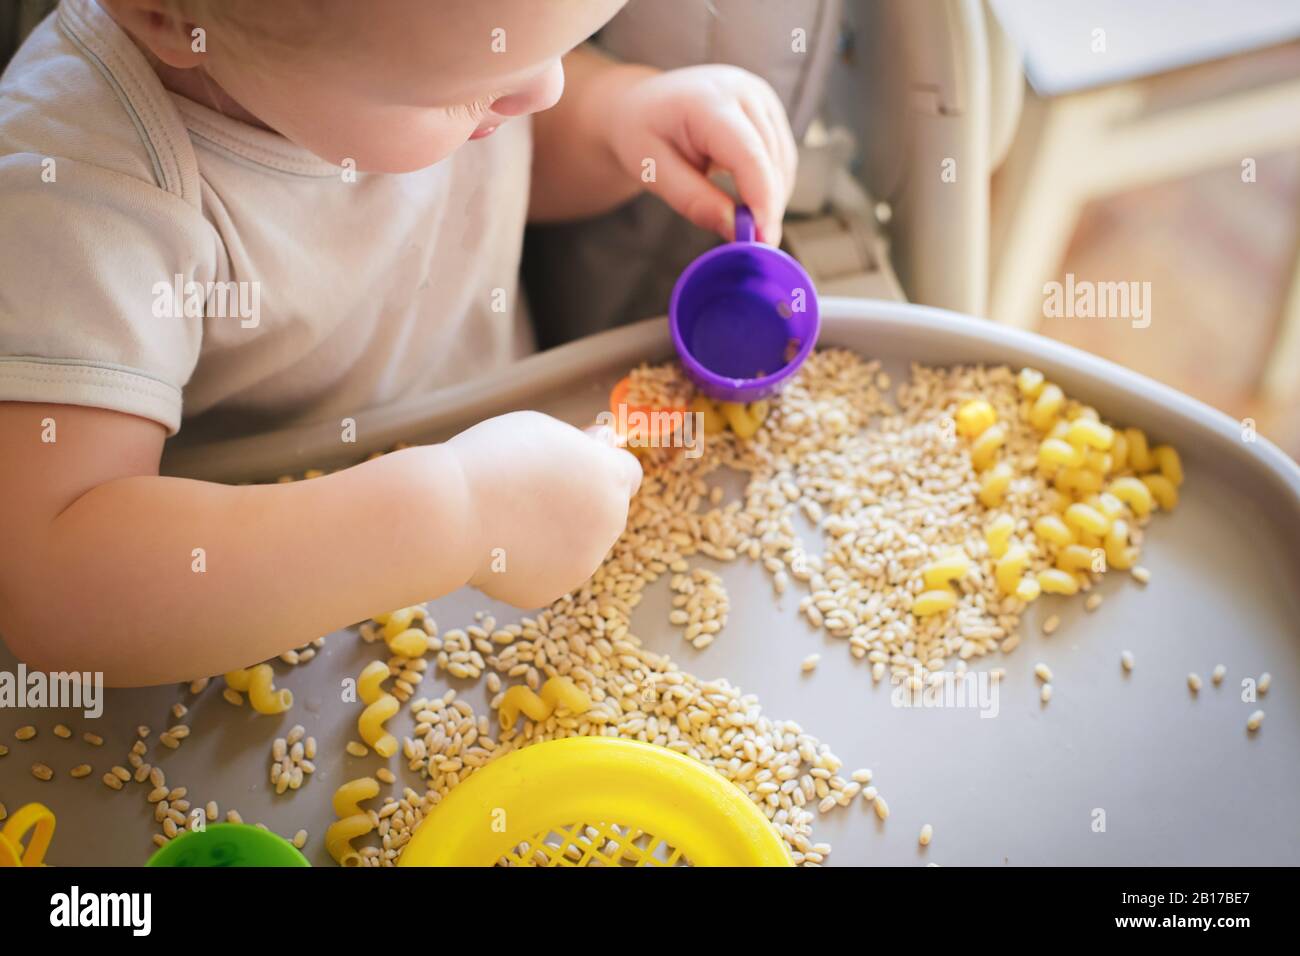 Kleines Kind gießt den gelben Löffel des Spielzeugs voll in der Tasse. Spiele mit Produkten. Walfdorfs Methode der Kinderentwicklung. Kinder lernen, selbstständig zu essen. Deve Stockfoto